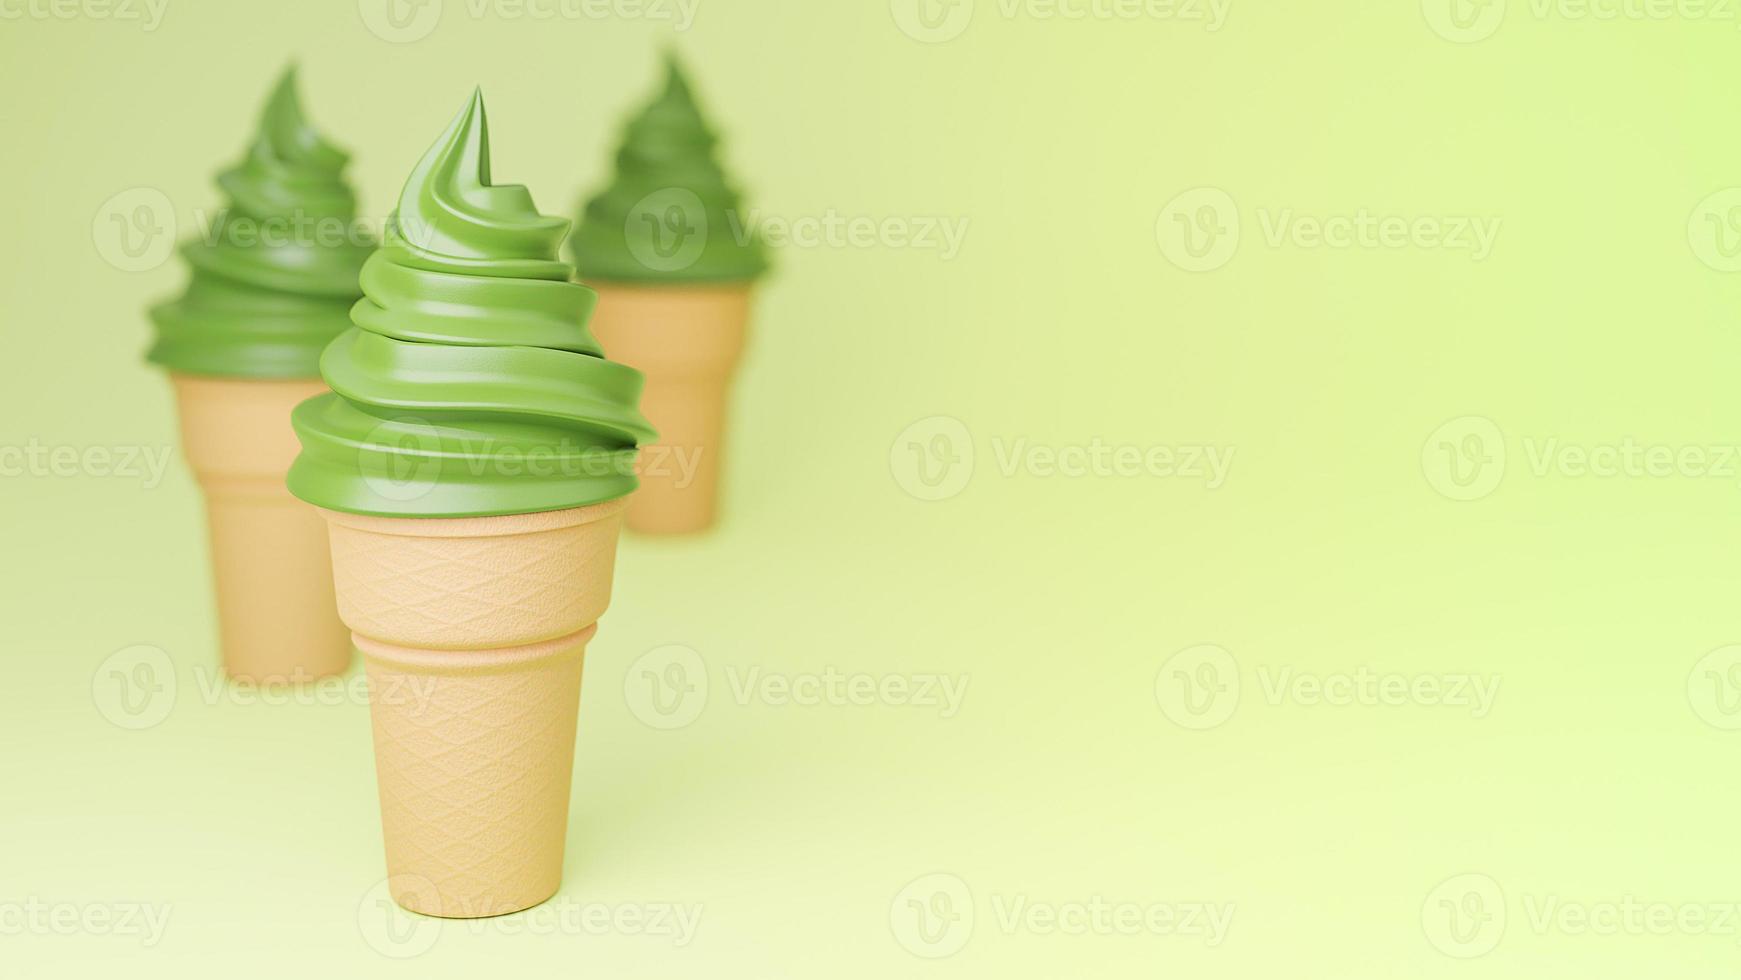 zacht serveren ijs van groene thee smaken op krokante kegel op groene achtergrond., 3D-model en illustratie. foto